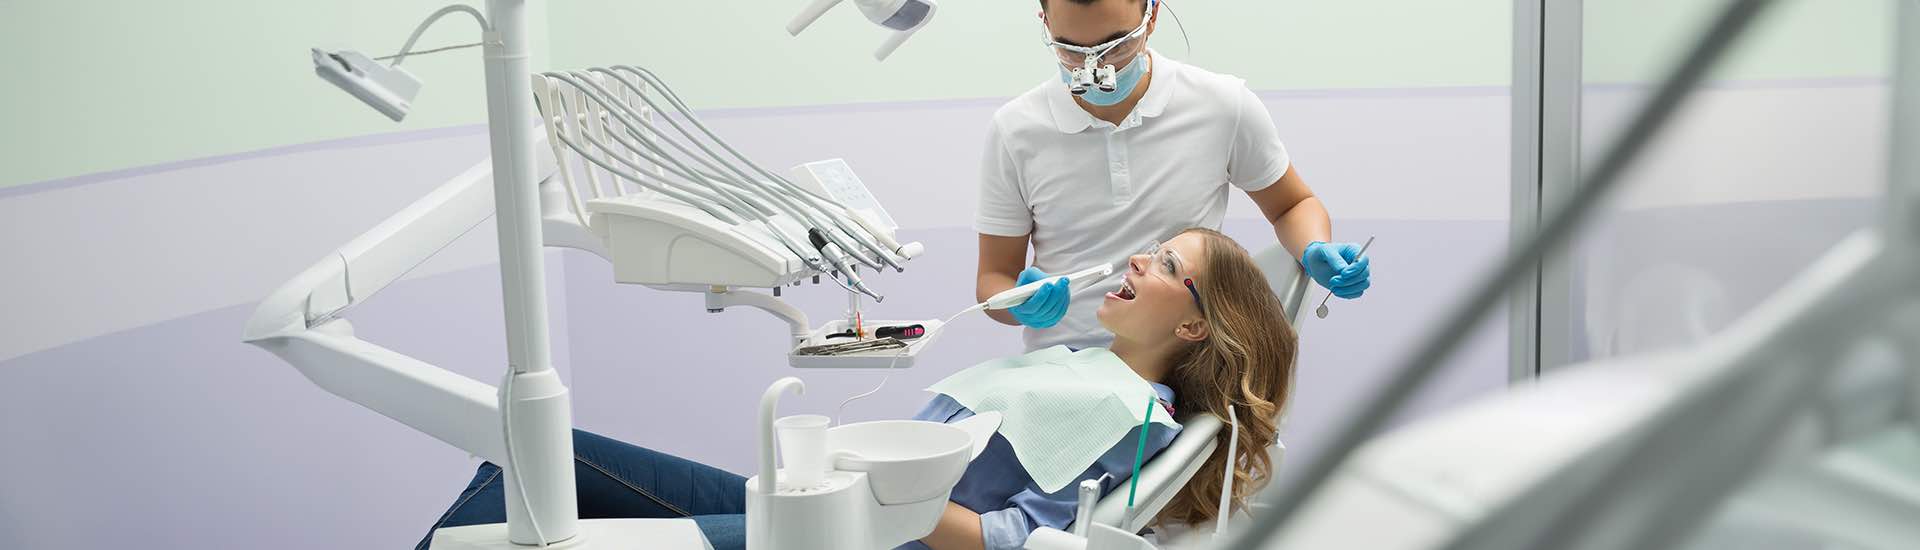 Leczenie ortodontyczne u dorosłych